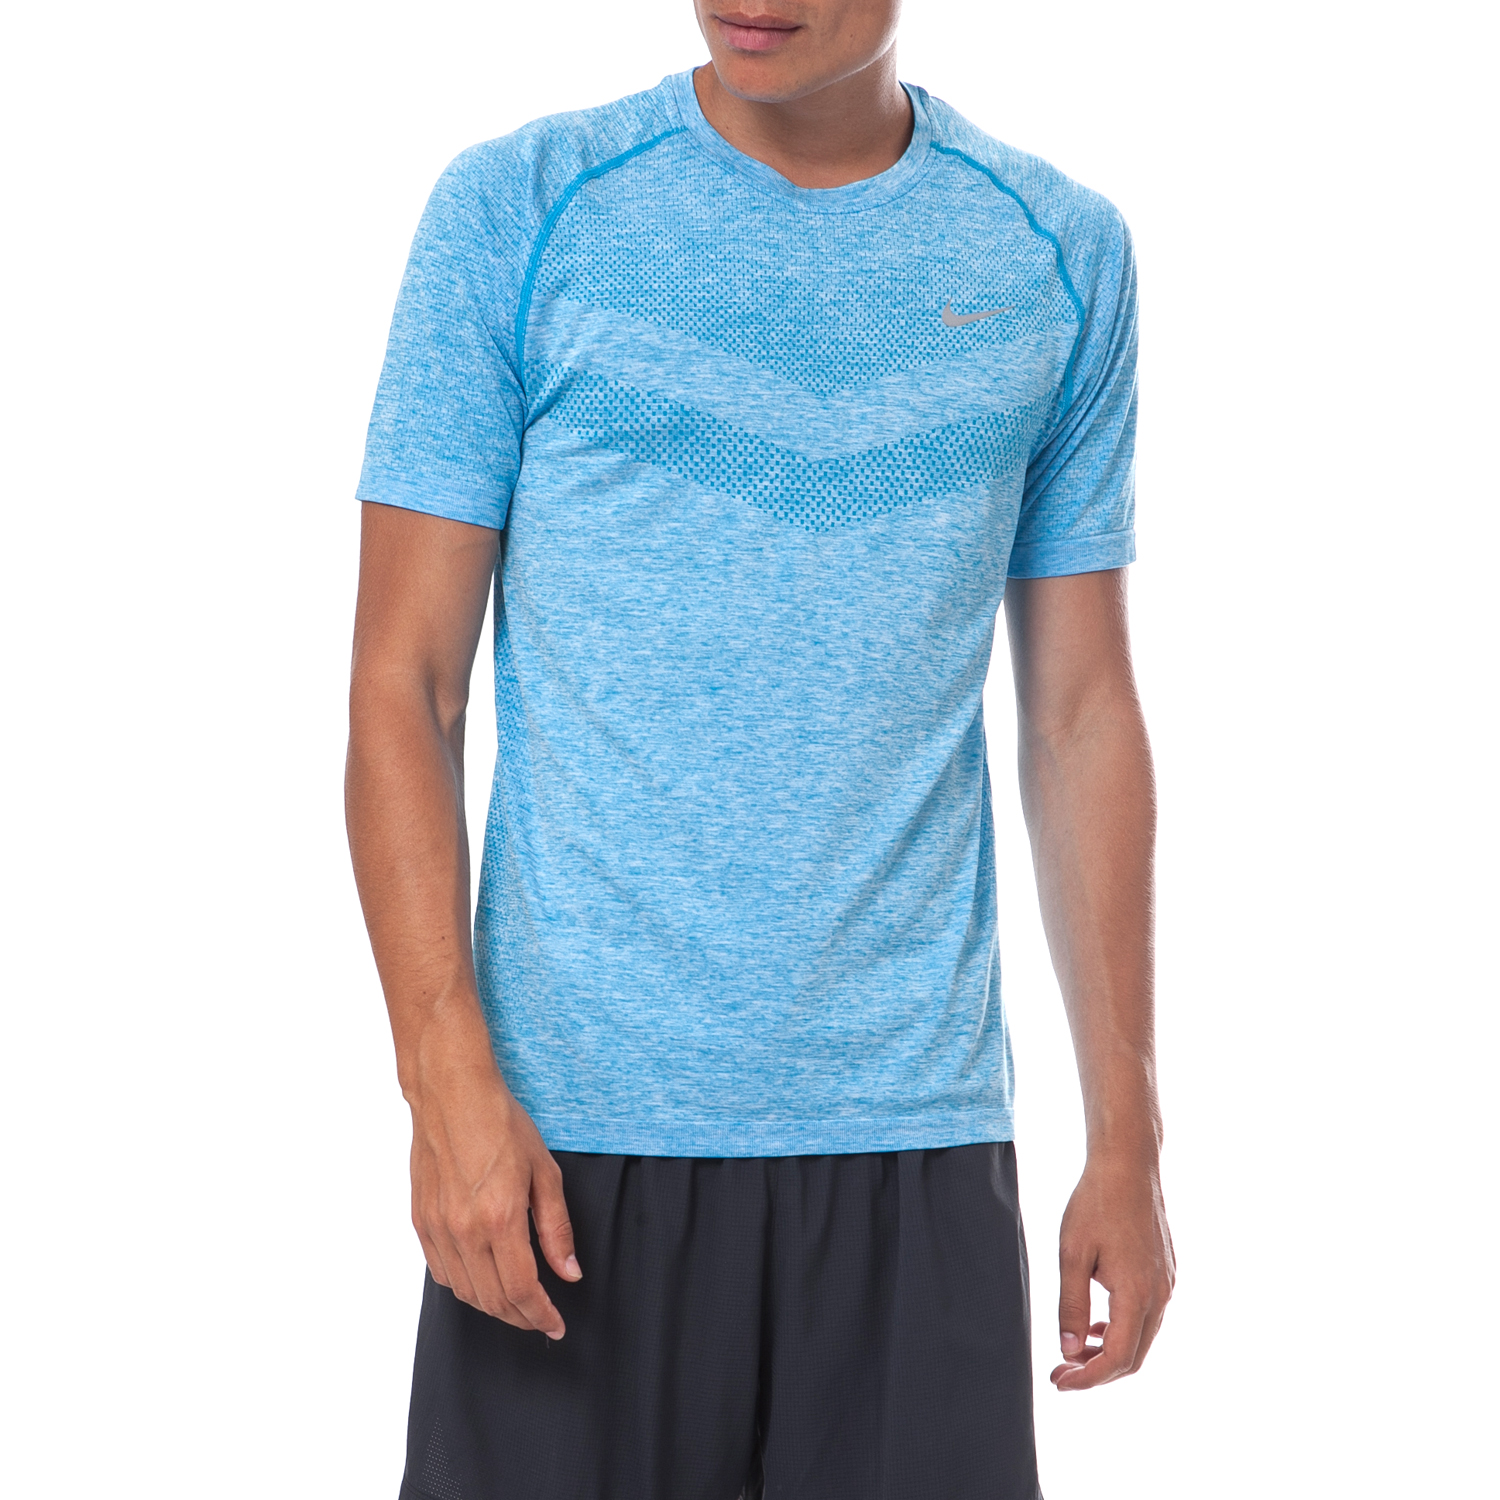 Ανδρικά/Ρούχα/Αθλητικά/T-shirt NIKE - Ανδρική μπλούζα Nike γαλάζια